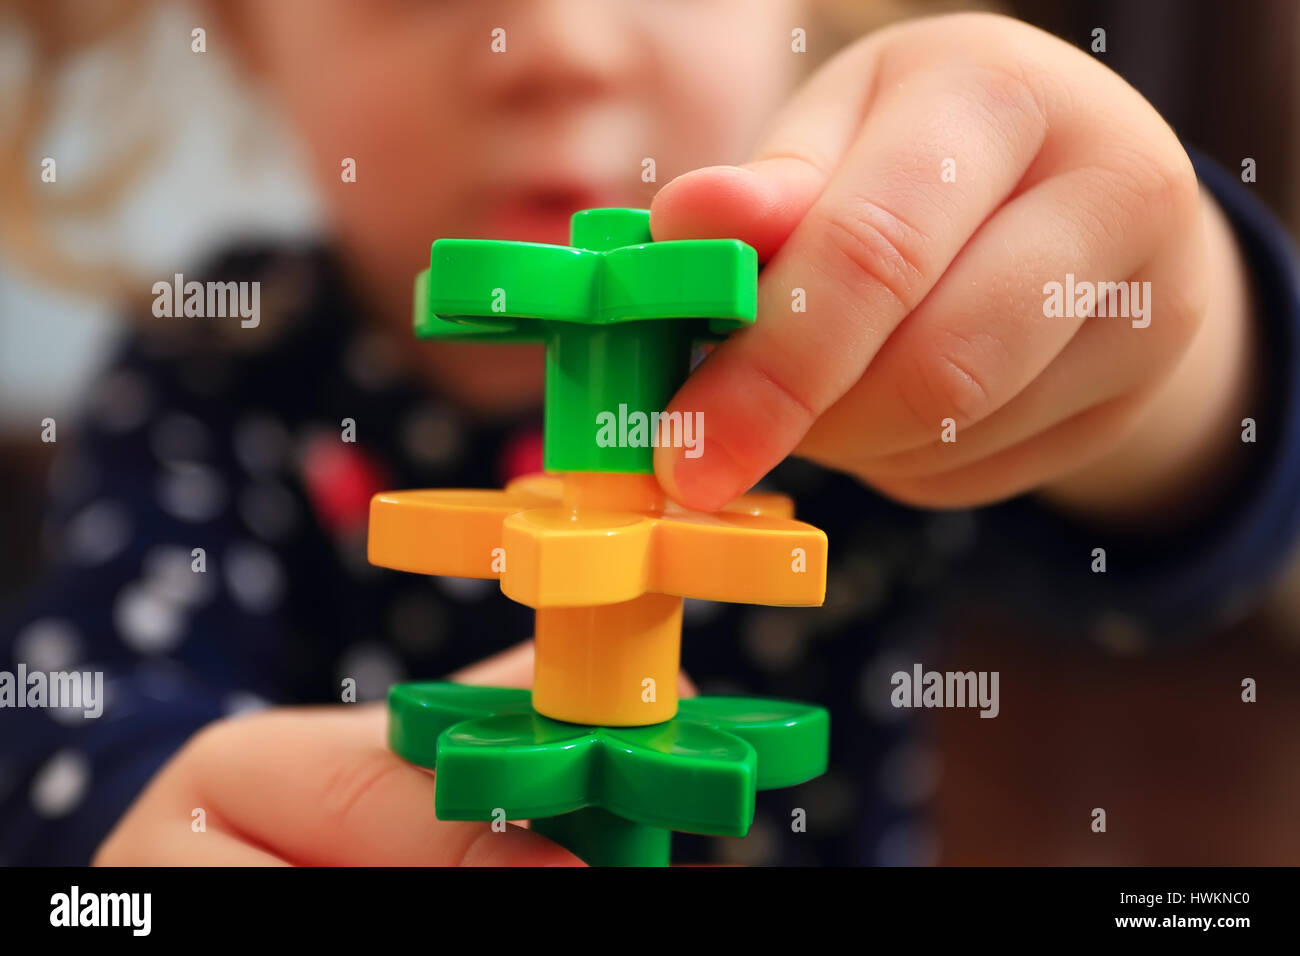 Kind mit Konstruktor Nahaufnahme Turm zu bauen. Nahaufnahme des Konstruktors in Kinderhände. Spielzeugturm am defokussierten Kind glückliches Gesicht Hintergrund. Stockfoto